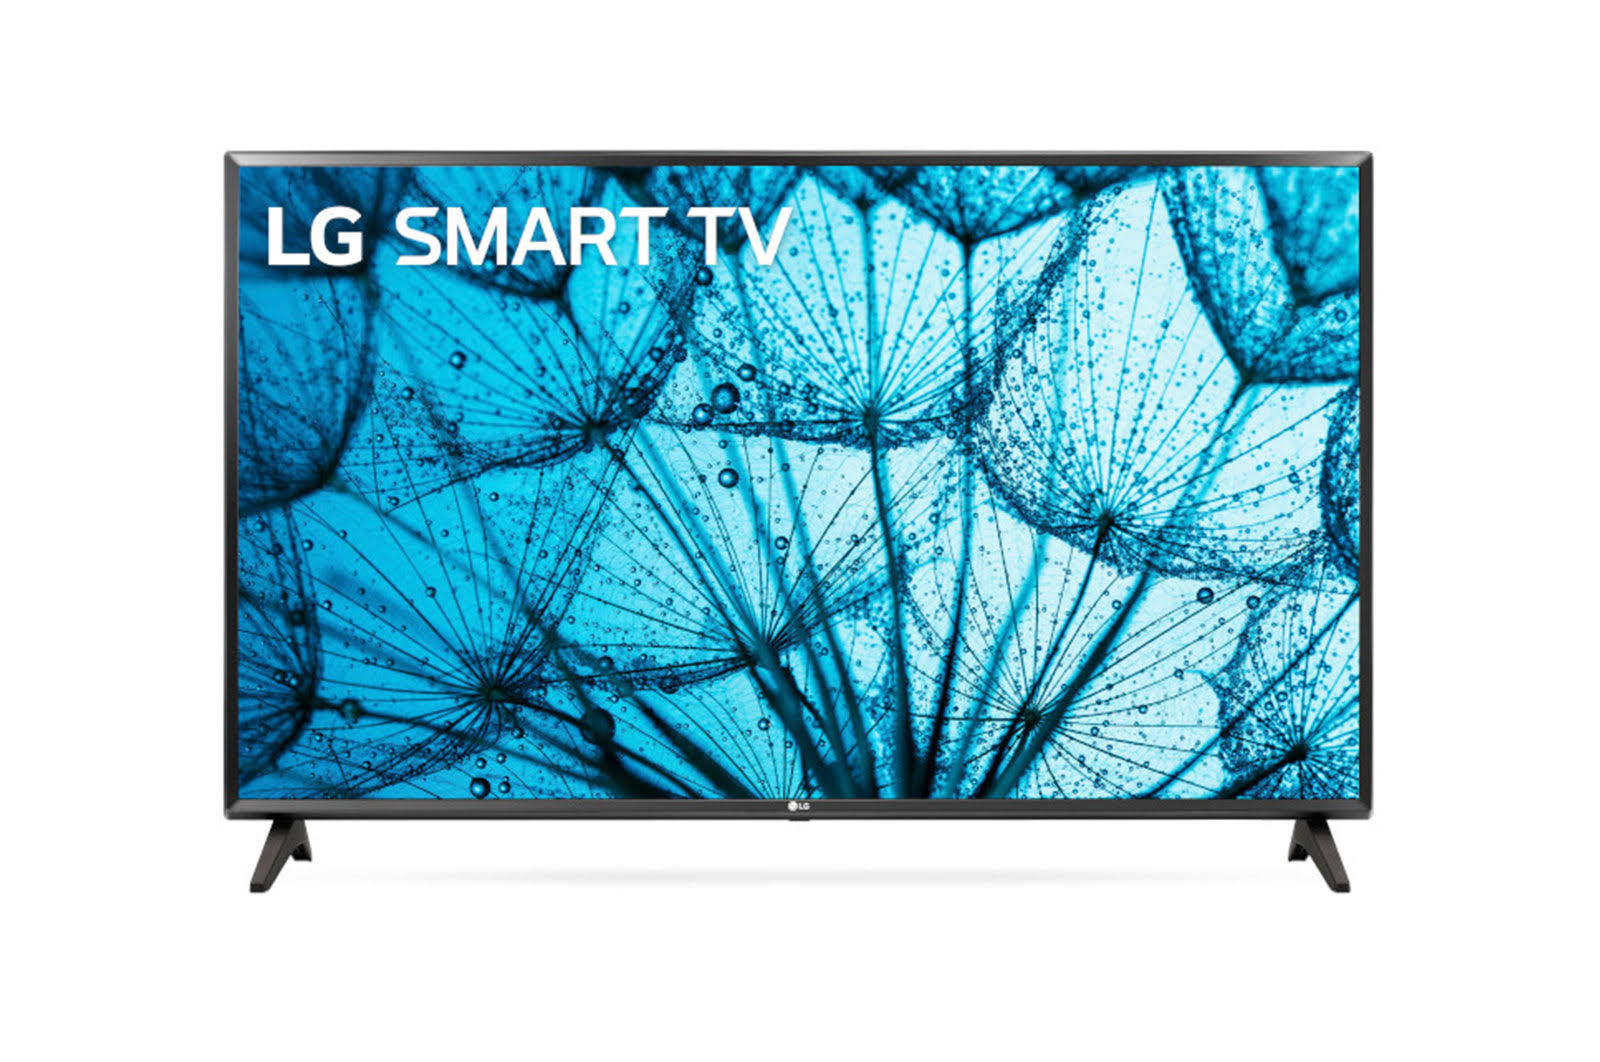 LG - AI ThinQ - 32LM577BPUA - 32" LED Smart TV - HD